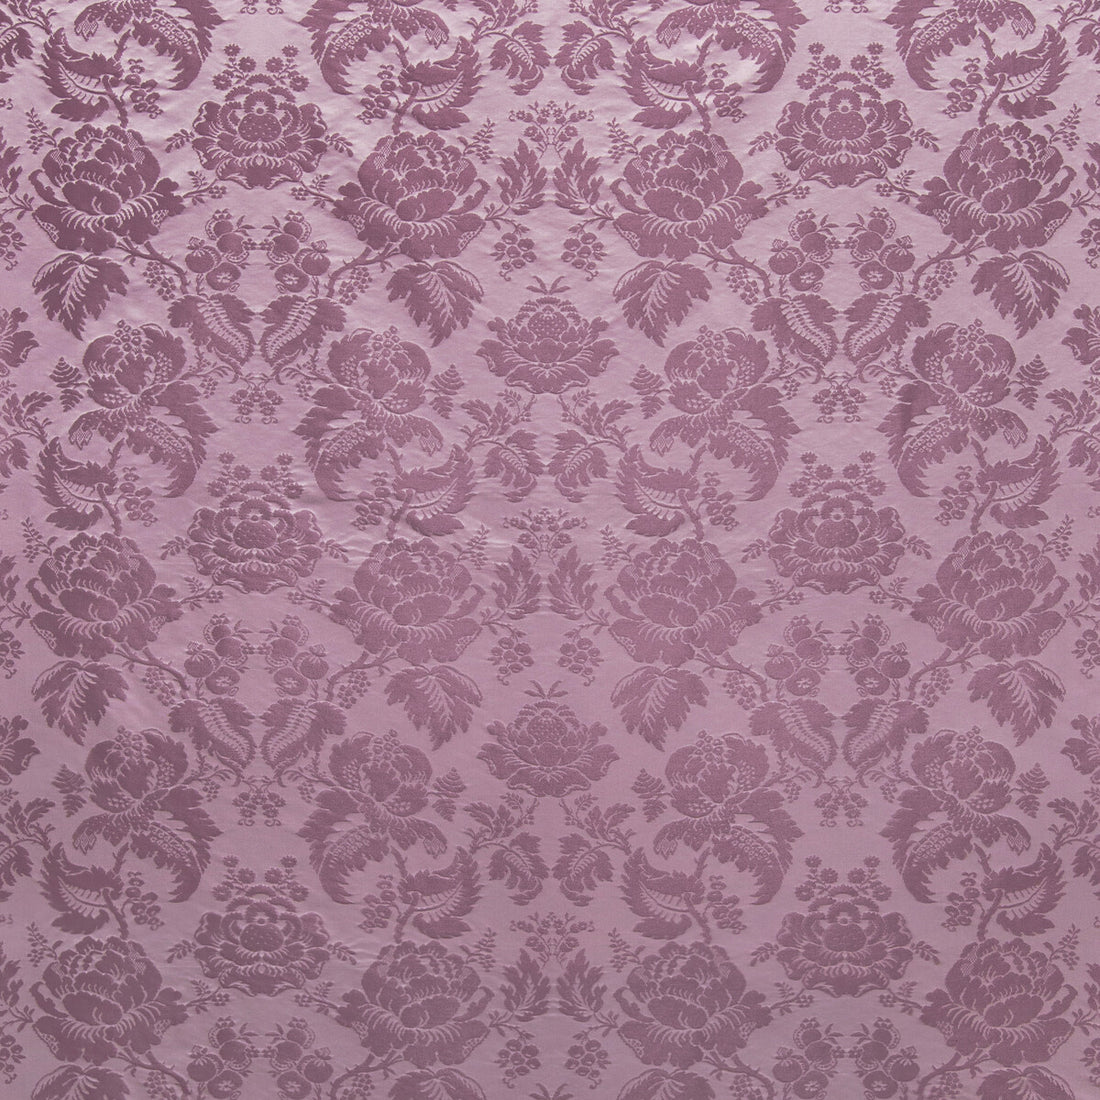 Moulins Damask fabric in lavender color - pattern BR-81035.1110.0 - by Brunschwig &amp; Fils